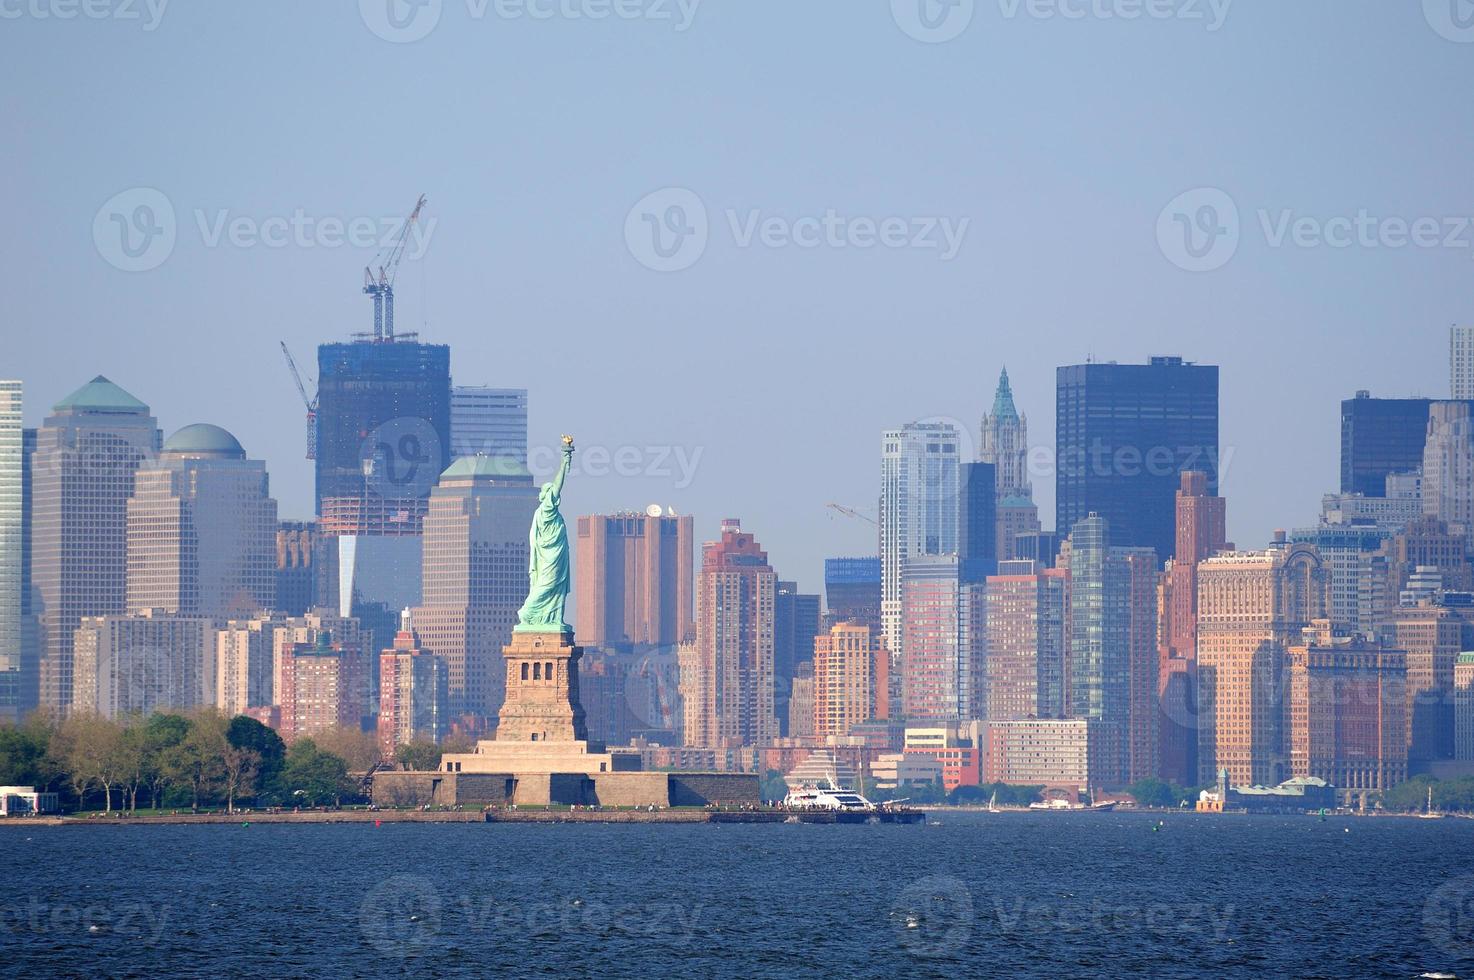 new york city untere manhattan skyline foto